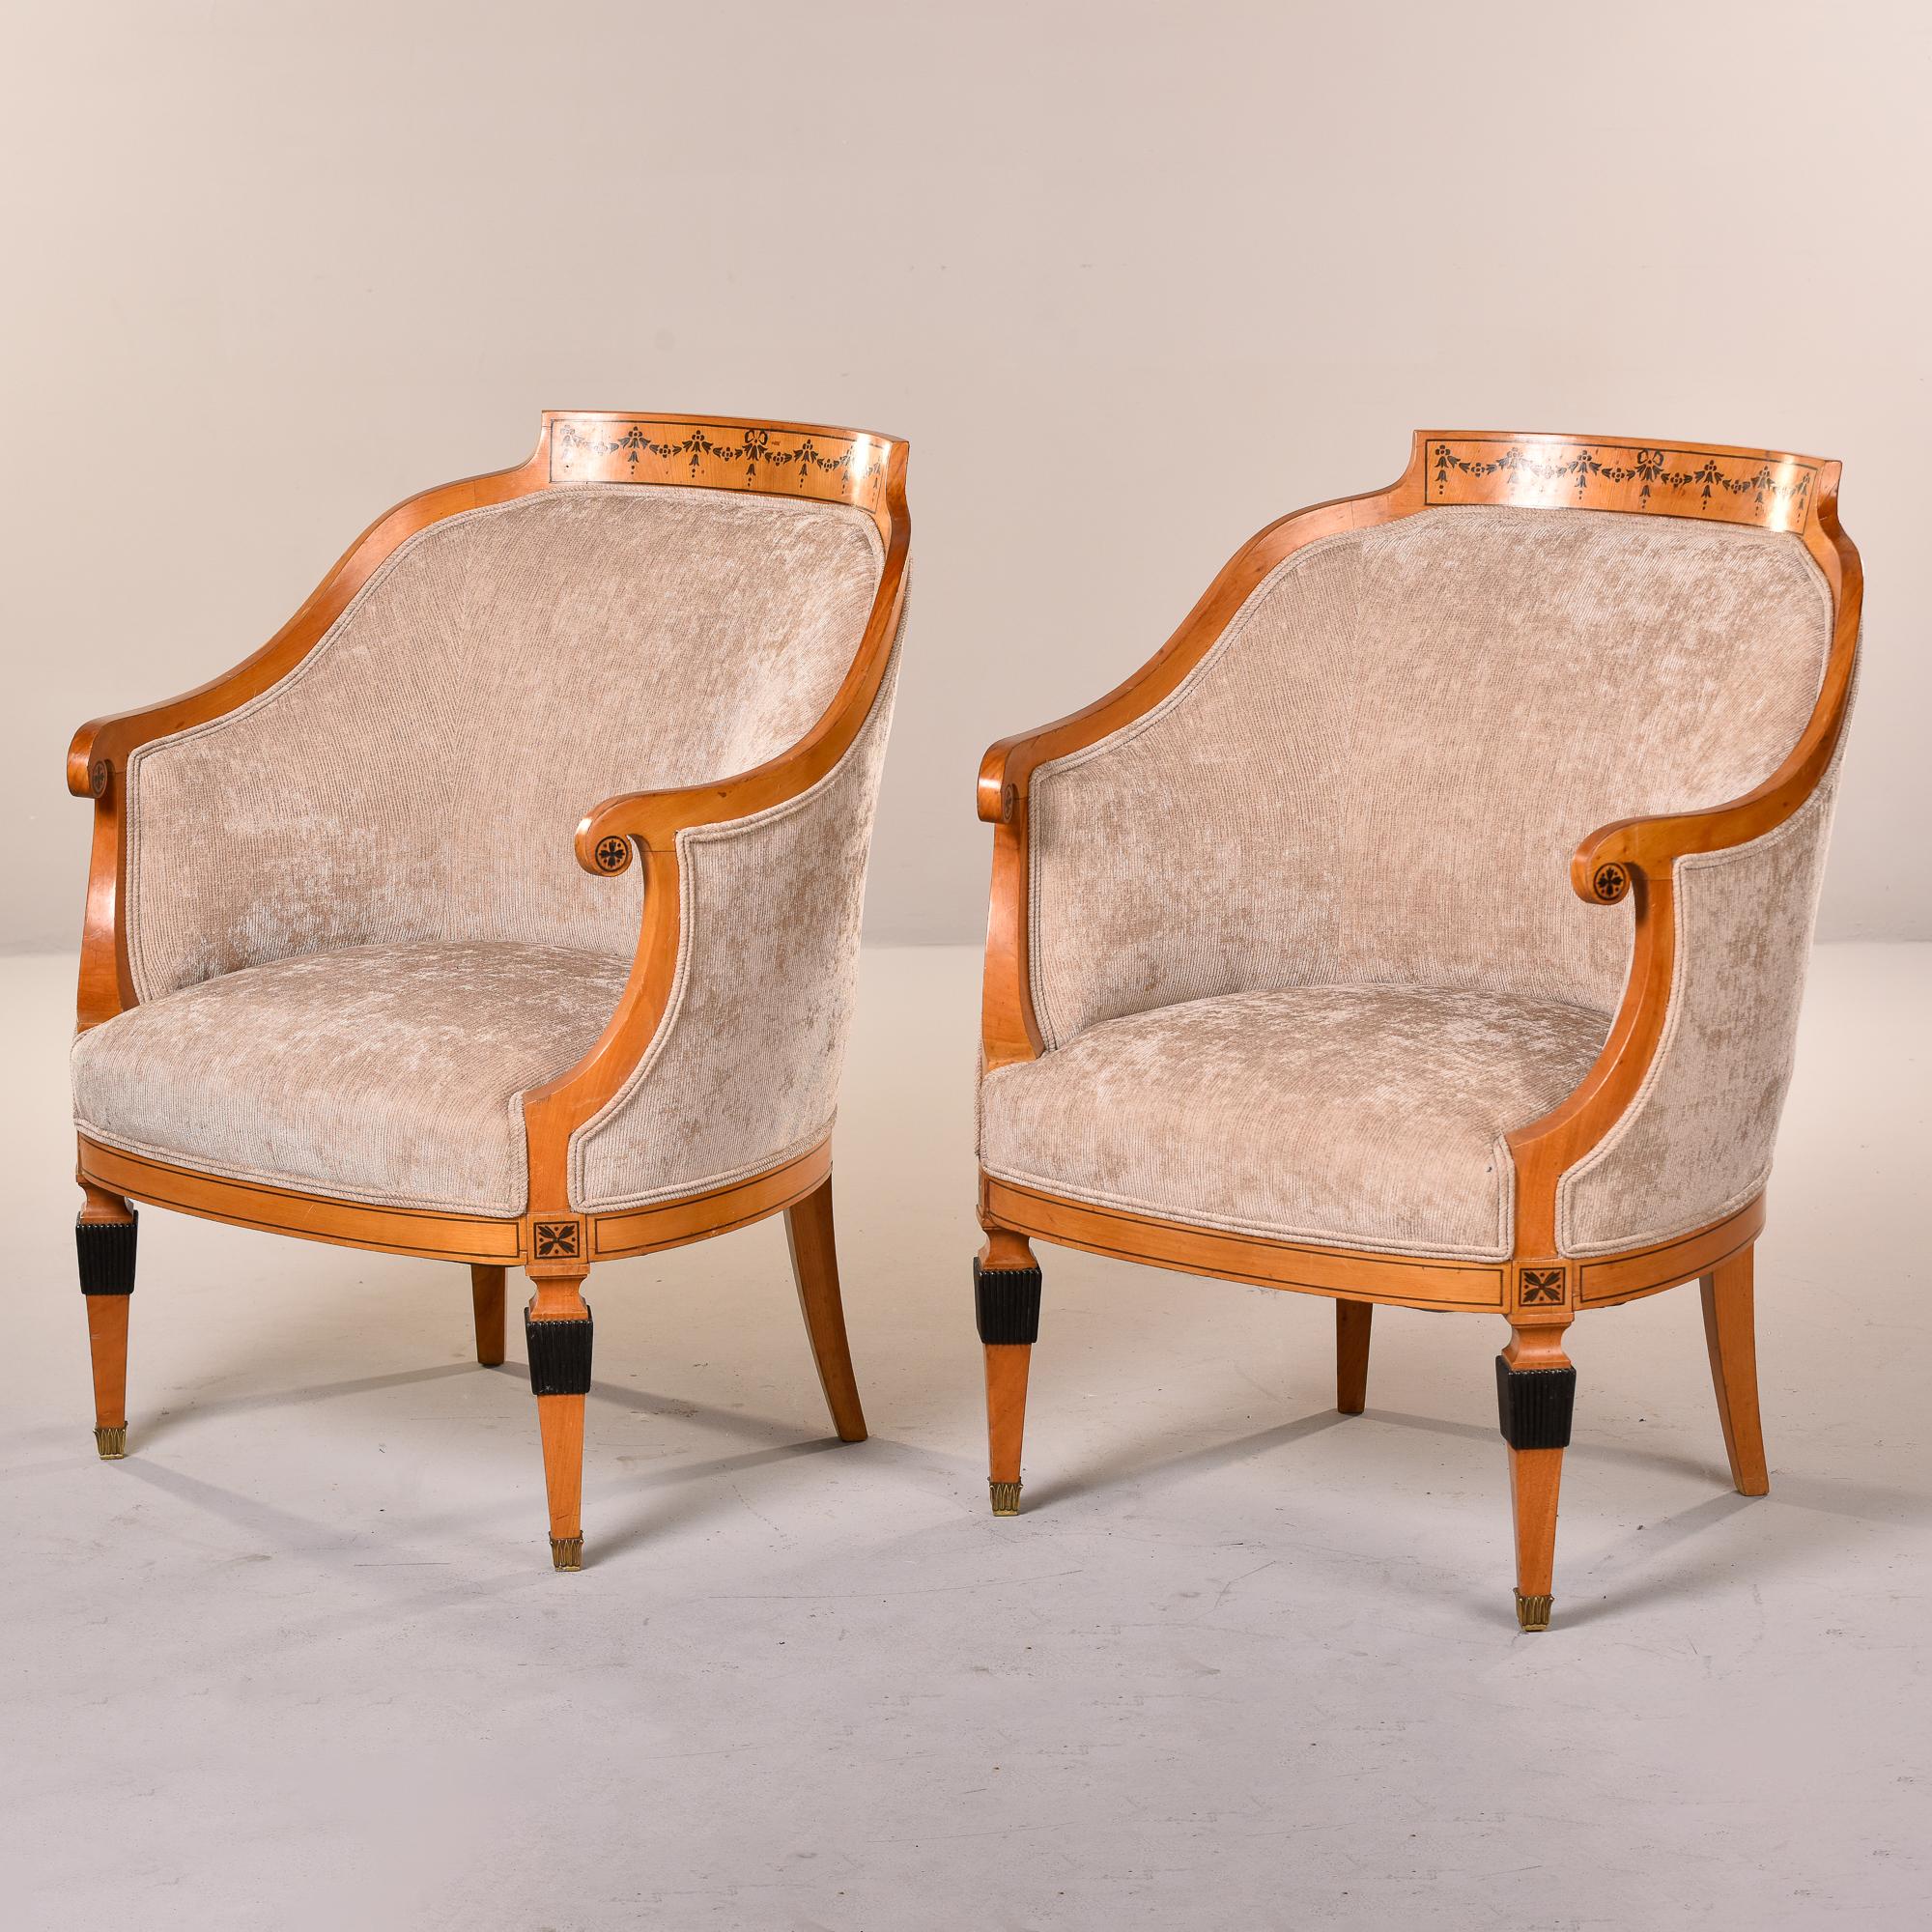 Dieses in Frankreich gefundene Paar Bergere-Stühle aus den 1930er Jahren hat einen hellen Holzrahmen mit gebogener Rückenlehne und geschwungenen Armlehnen. Die Rahmen haben gemalte Blumendetails an der Oberseite der Rückenlehnen, an der Außenseite